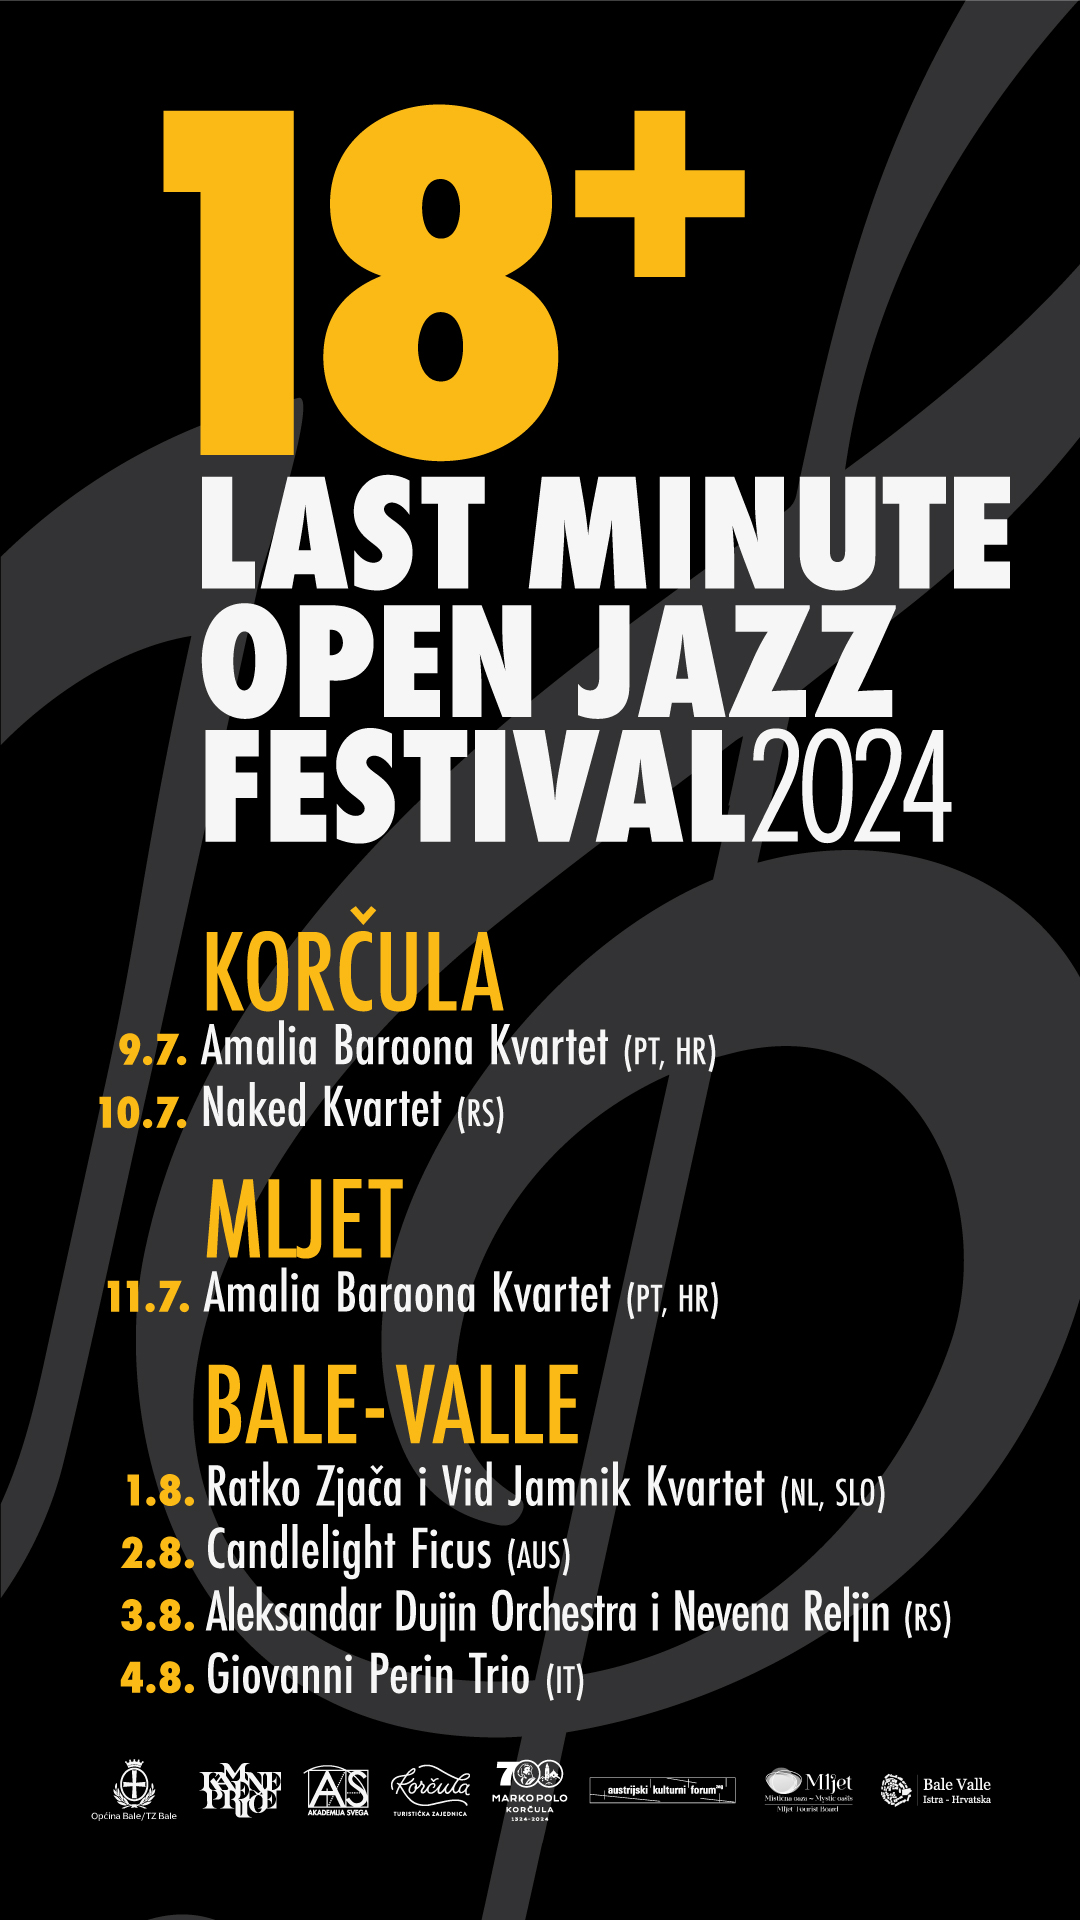 Last minute open jazz festival